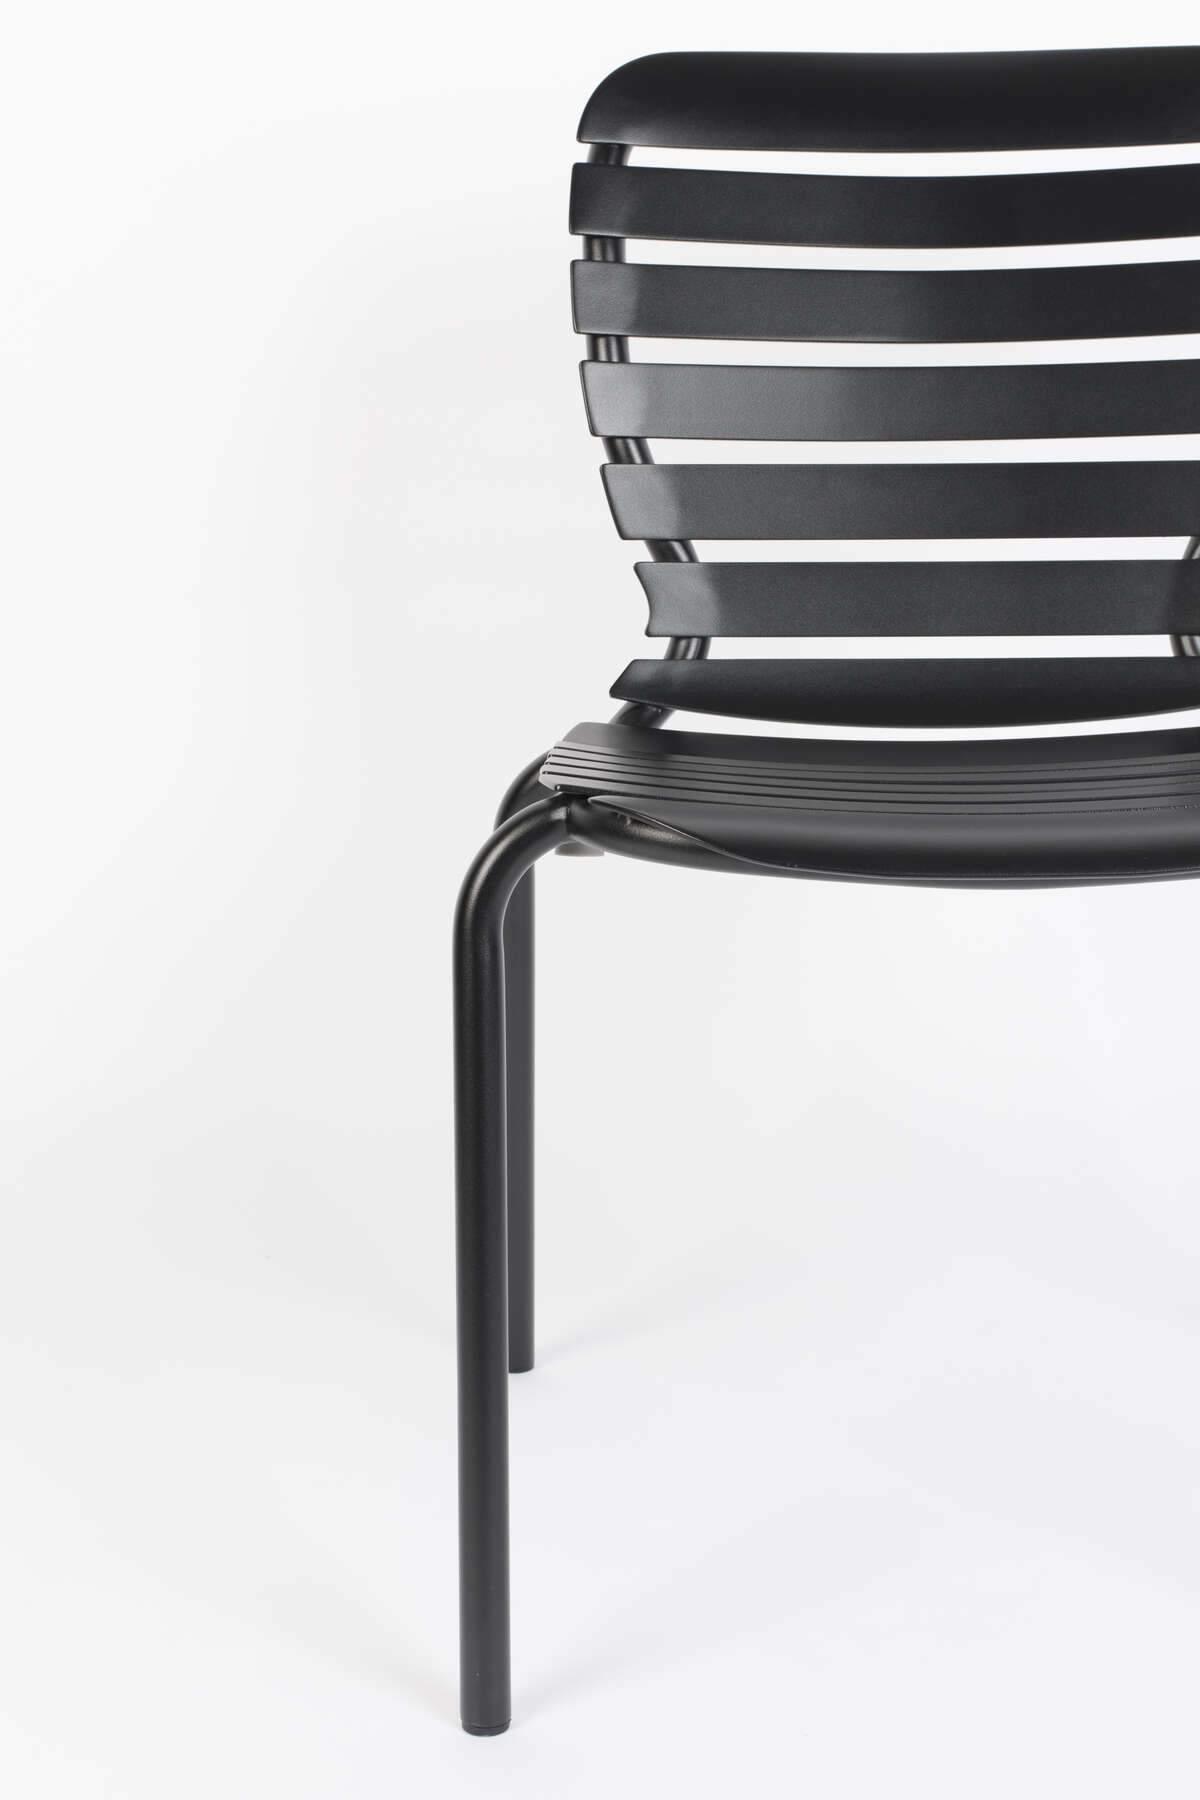 Krzesło ogrodowe VONDEL czarny, Zuiver, Eye on Design